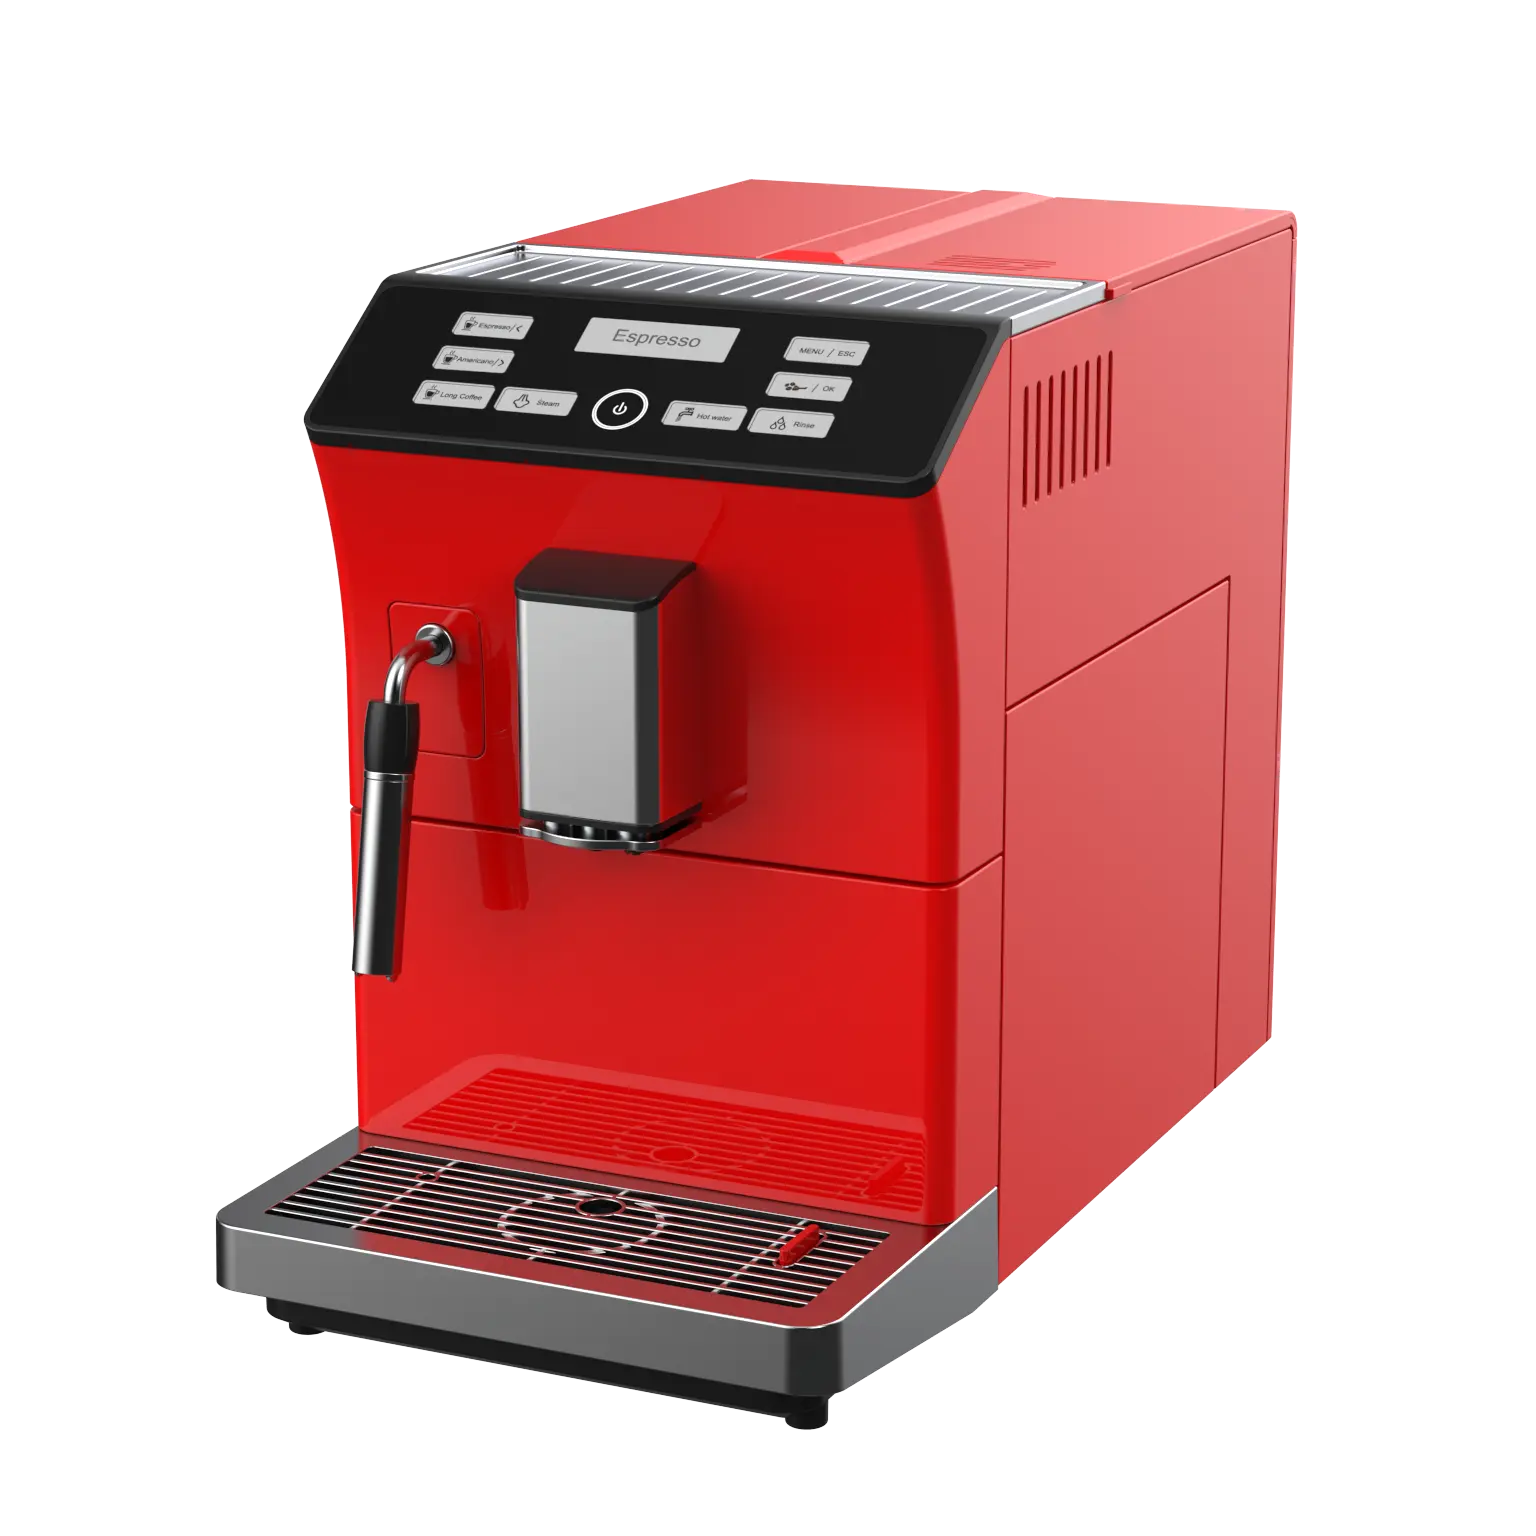 Macchina per caffè espresso completamente automatica cappuccino One touch con funzione di risciacquo automatico